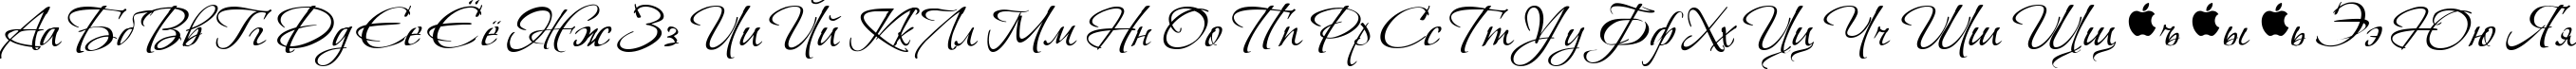 Пример написания русского алфавита шрифтом Vera Crouz